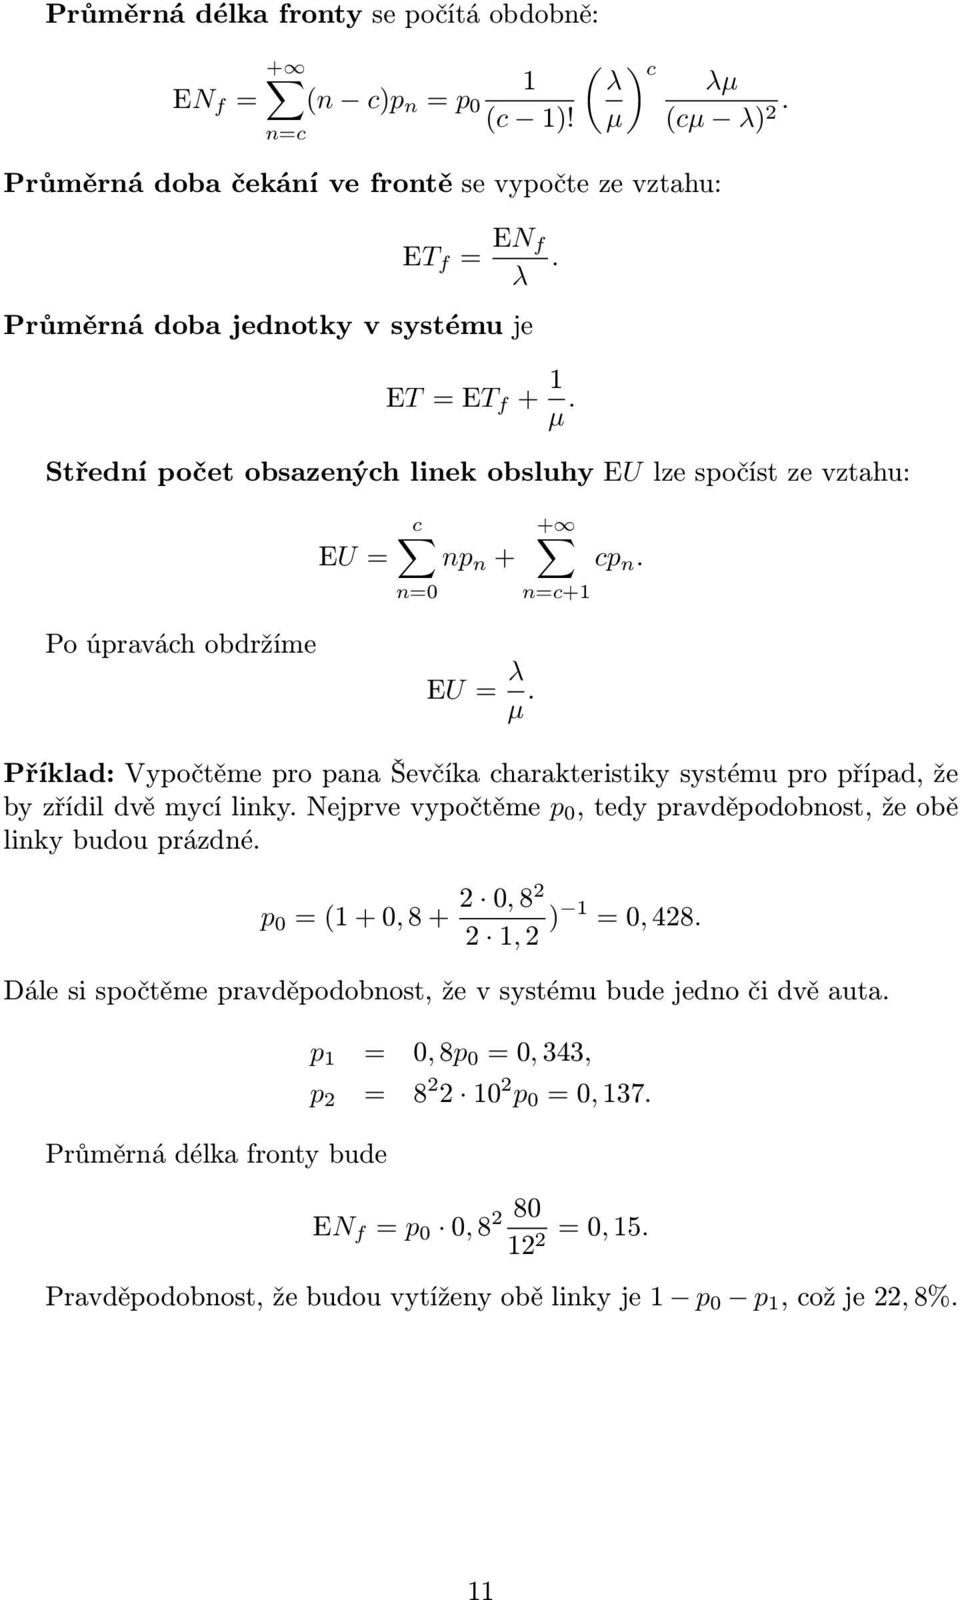 Příklad: Vypočtěme pro pana Ševčíka charakteristiky systému pro případ, že by zřídil dvě mycí linky. Nejprve vypočtěme p 0, tedy pravděpodobnost, že obě linky budou prázdné.